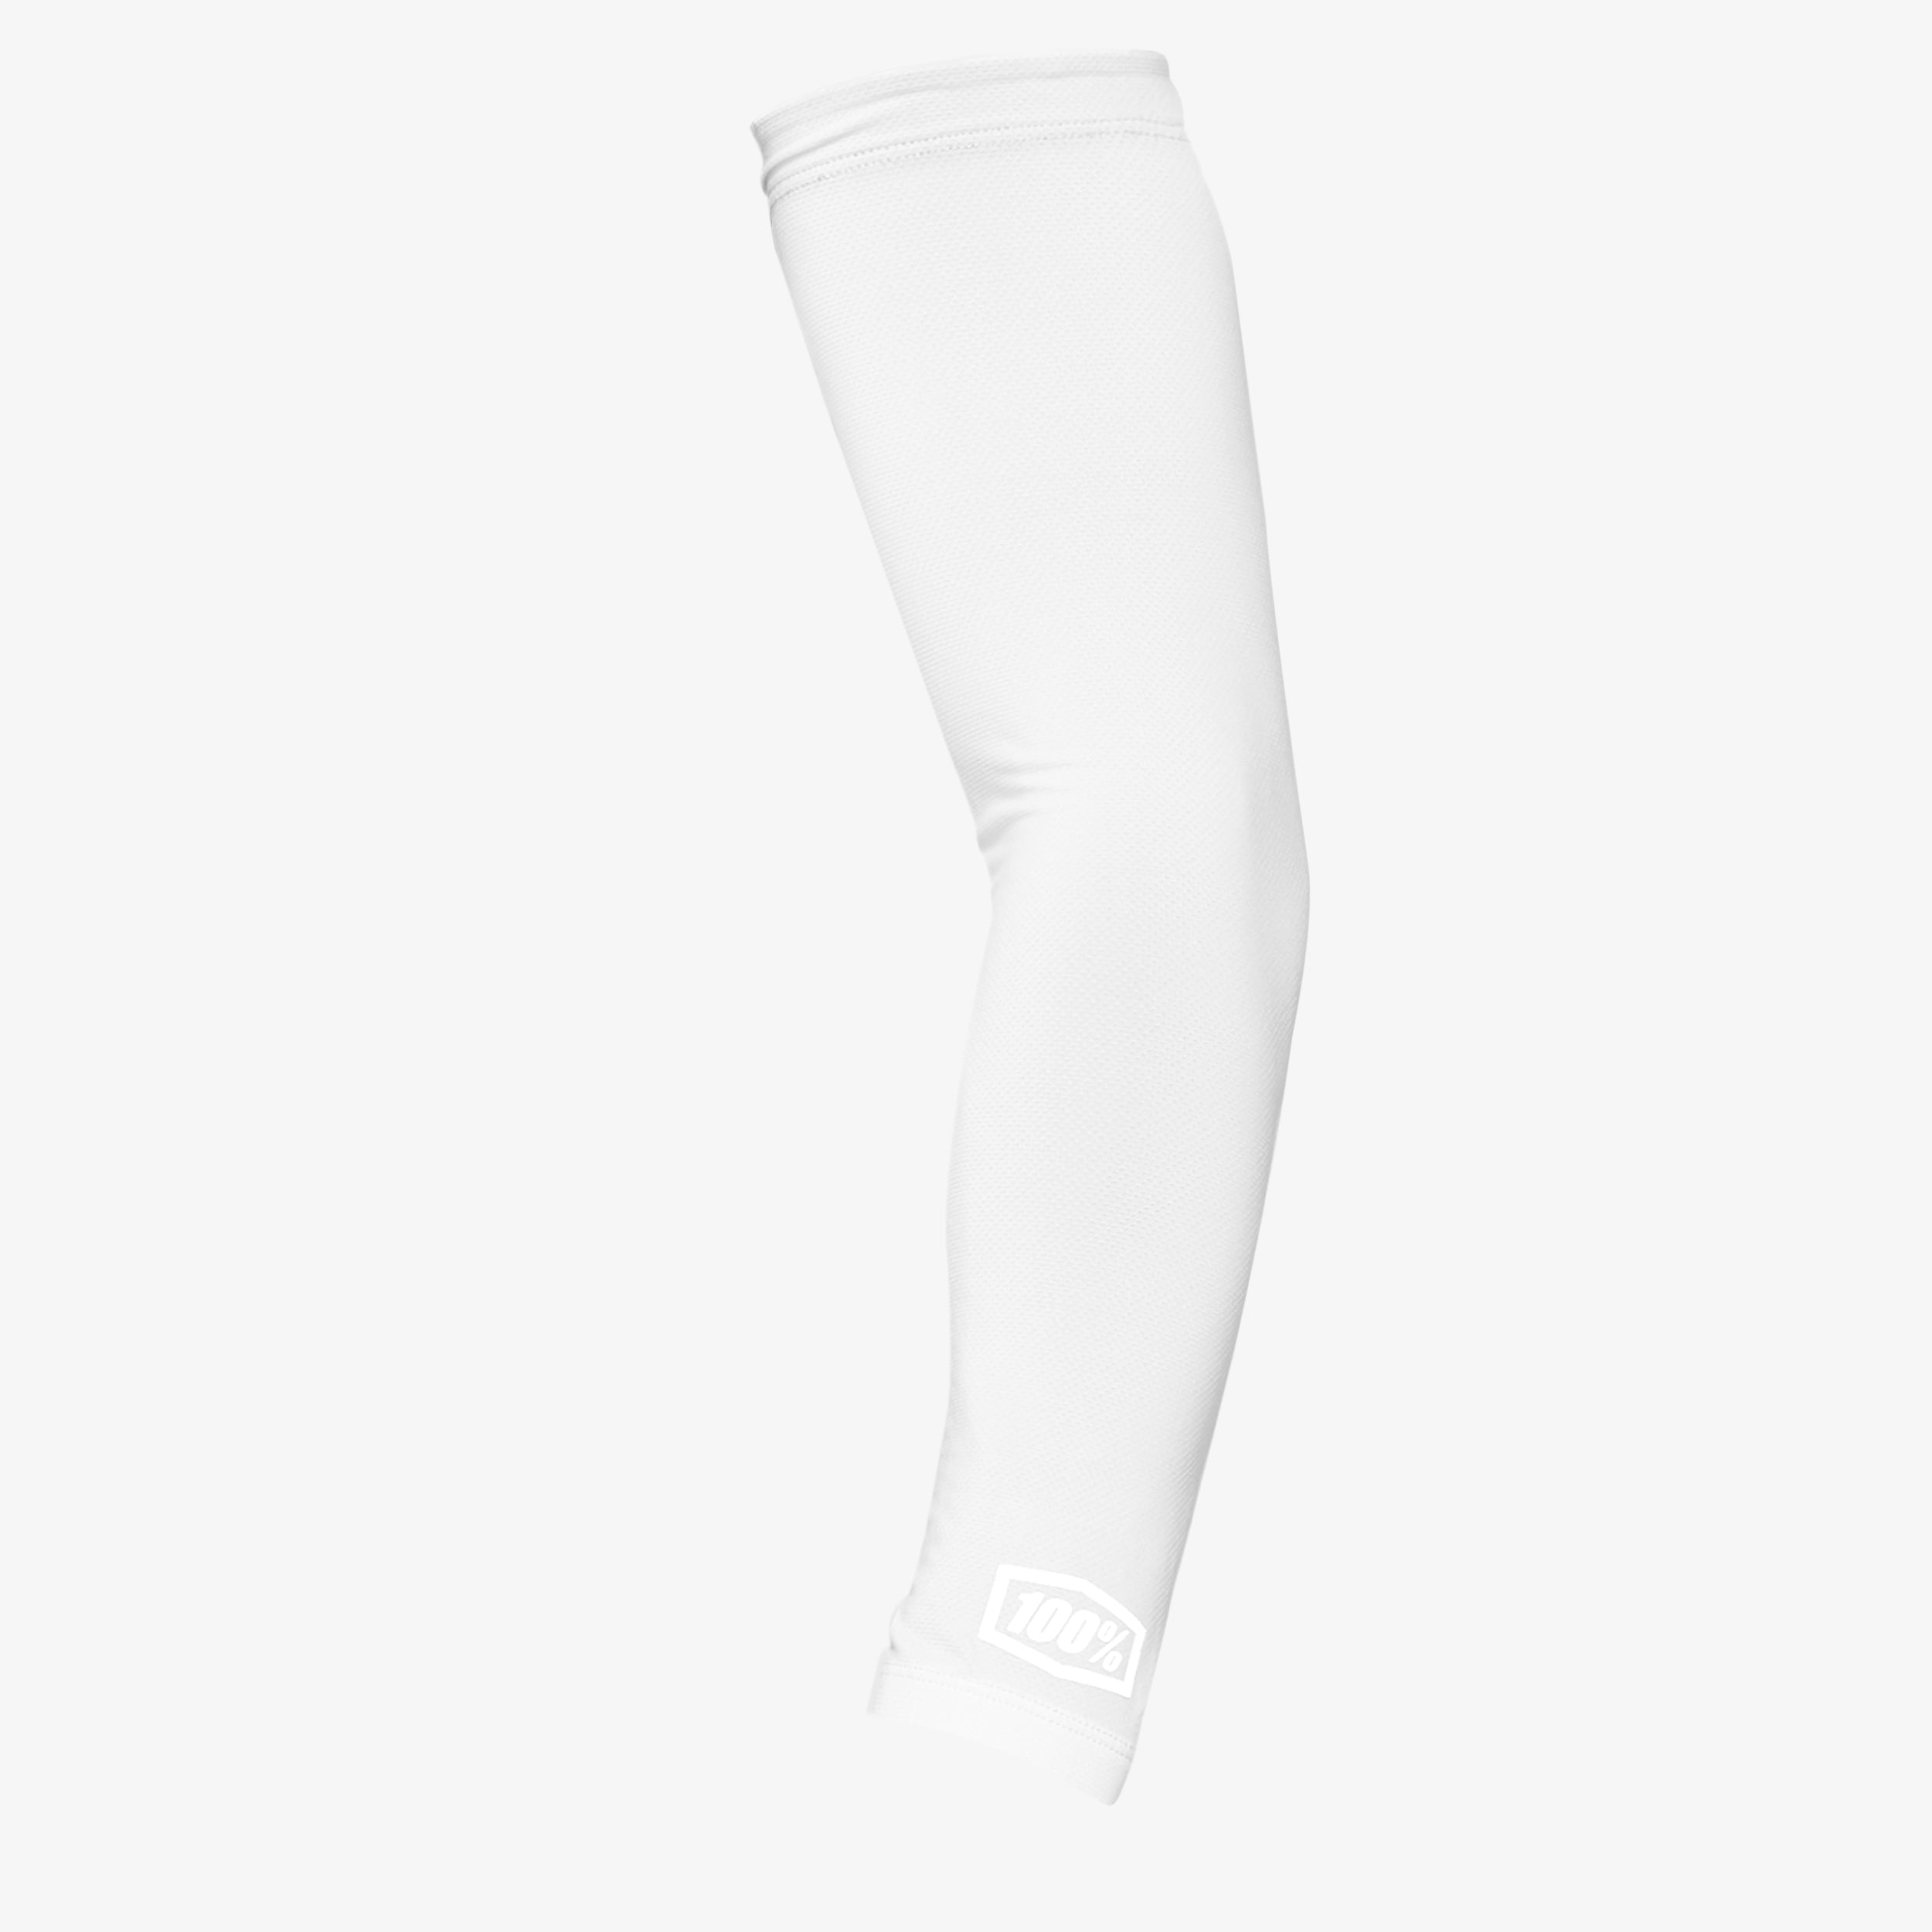 EXCEEDA Arm Sleeve - White